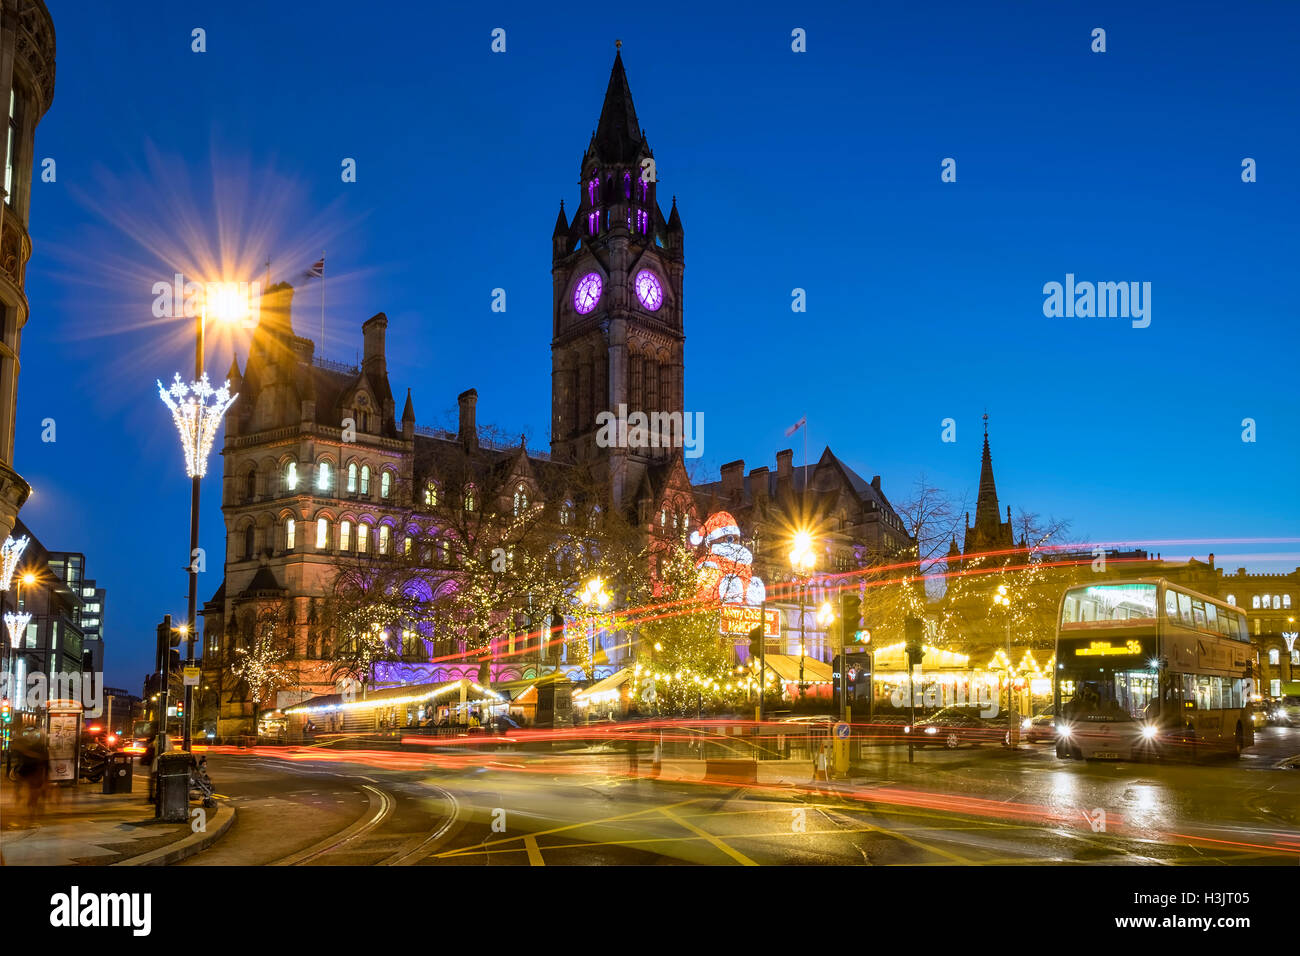 Les marchés de Noël & Manchester Town Hall de nuit, Albert Square, centre de Manchester, Manchester, Angleterre, RU Banque D'Images